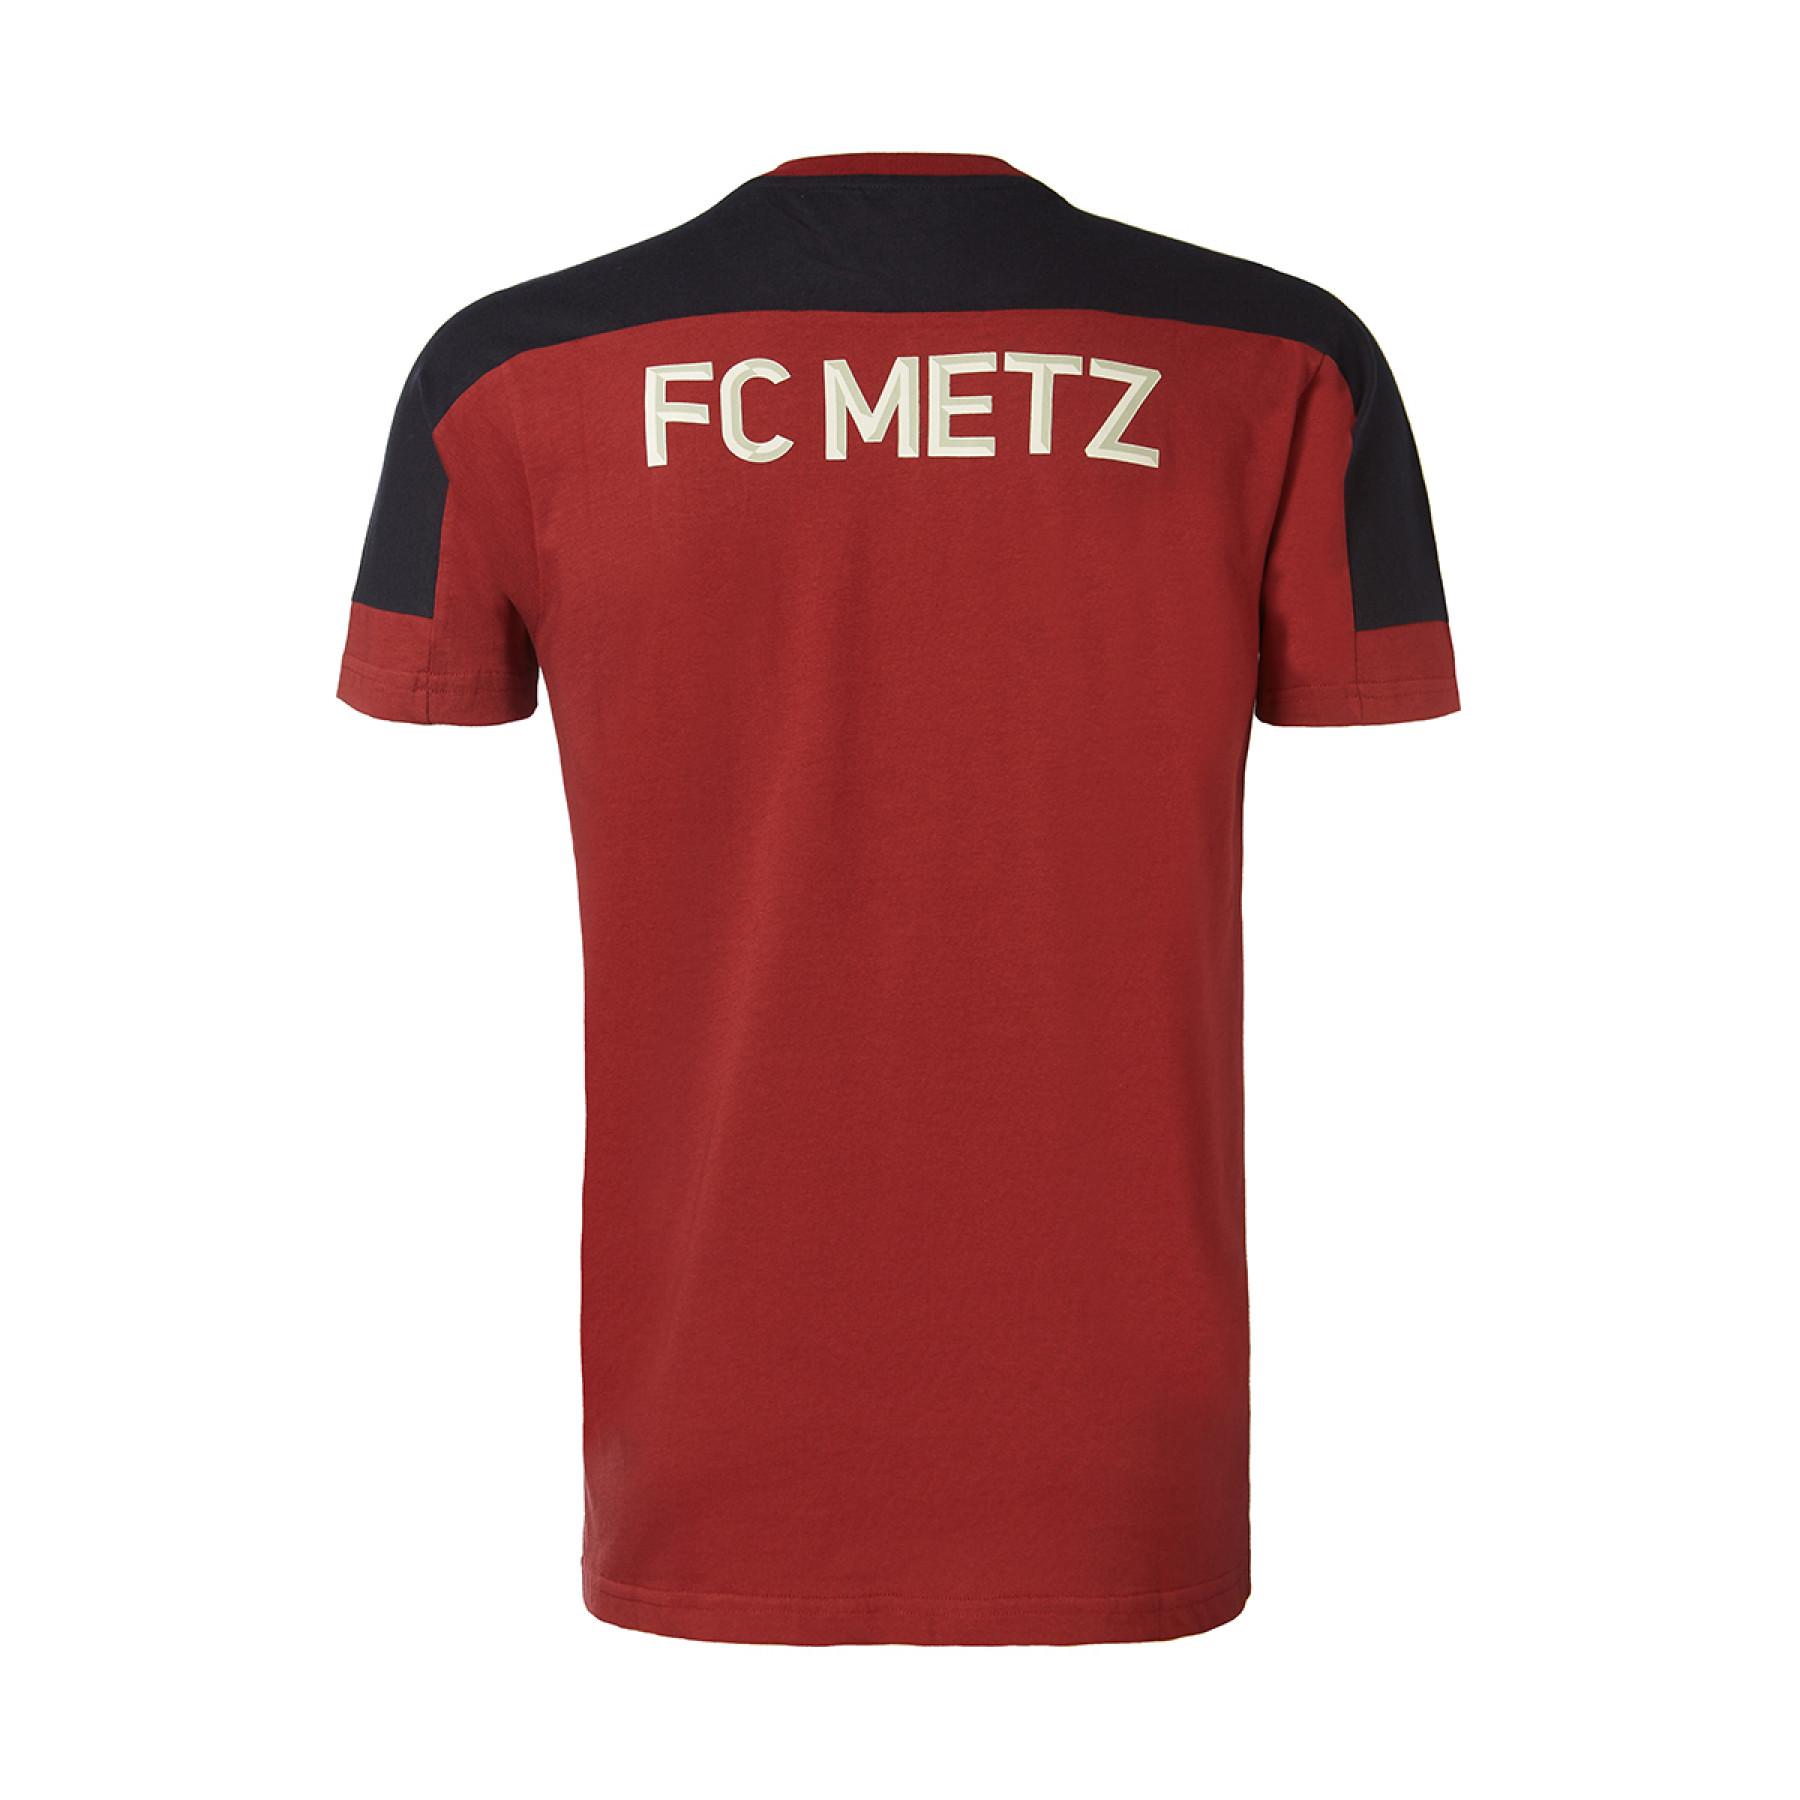 Koszulka FC Metz 2020/21 algardi